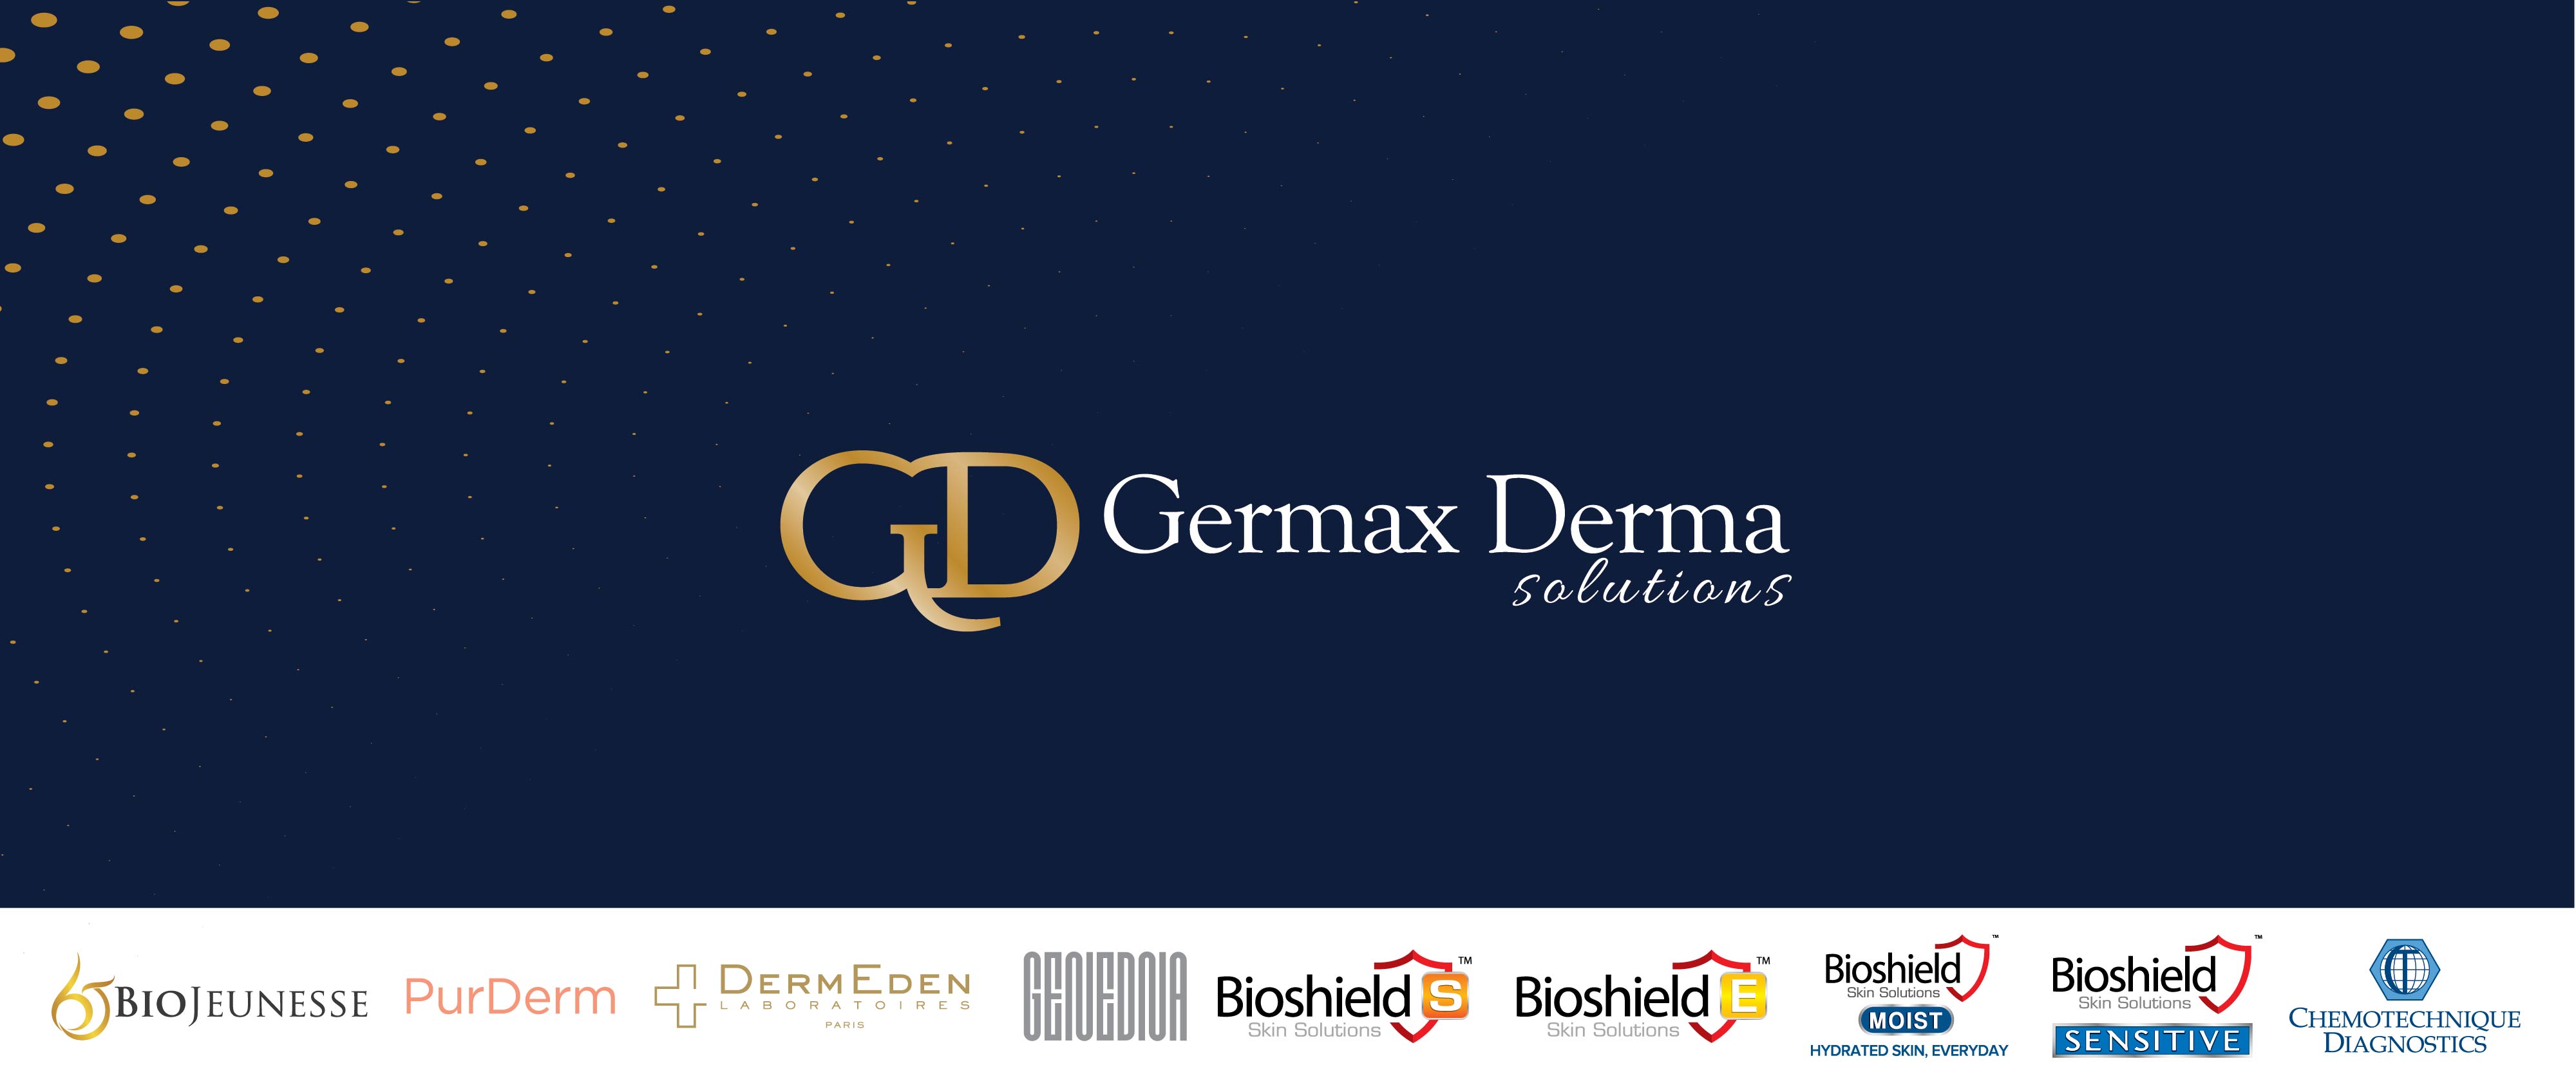 Germax Derma Solutions